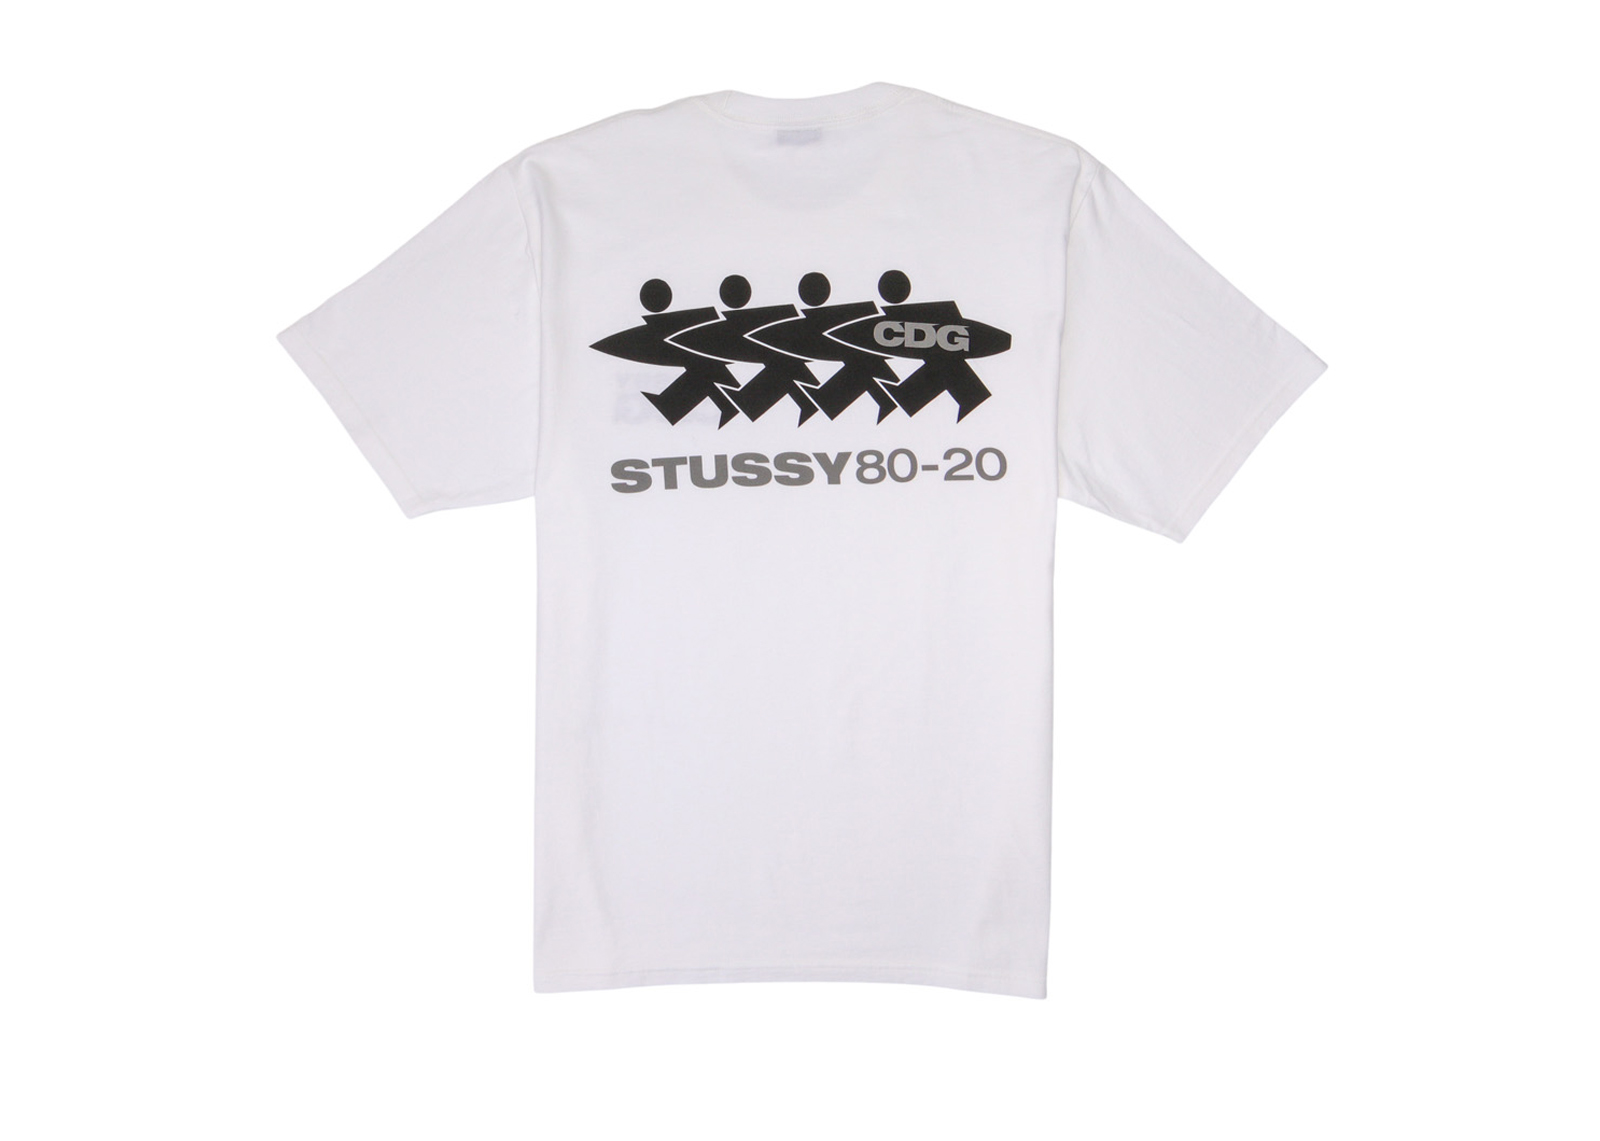 Stussy x CDG Surfman T-shirt White Men's - FW20 - US